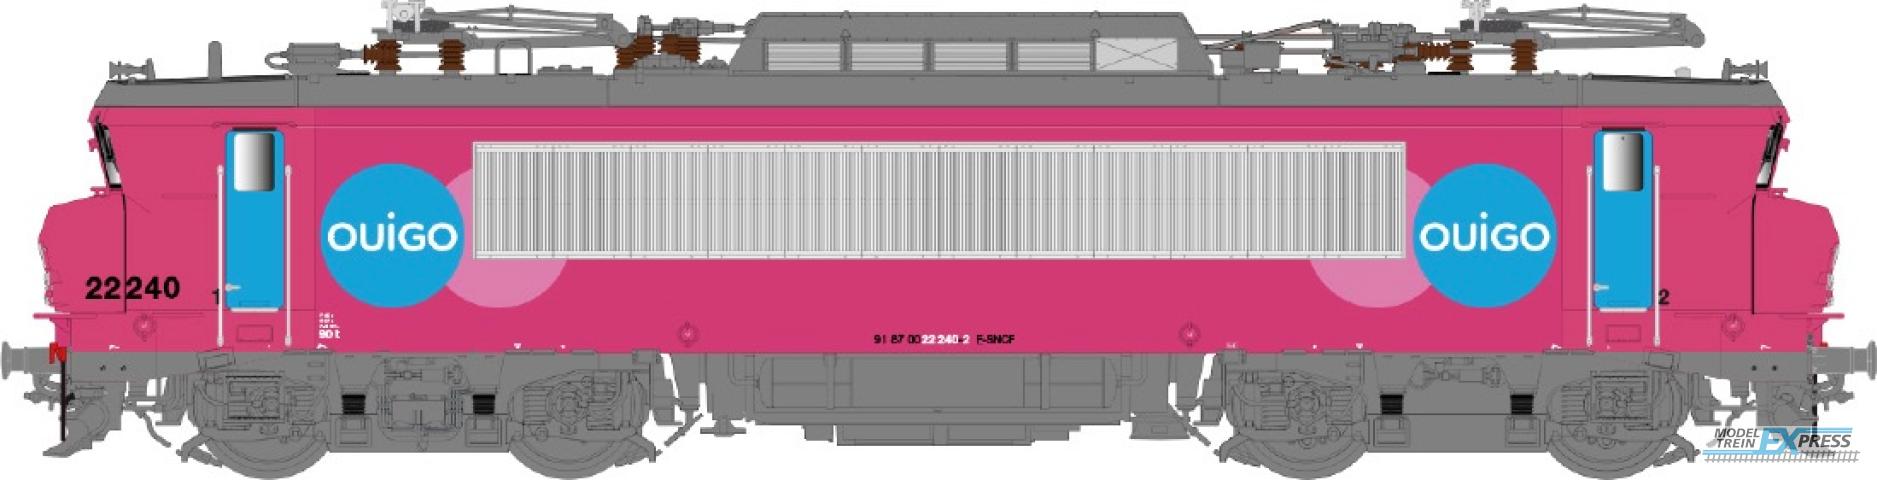 LS Models 11106S BB22240, OUIGO-livrei, Carmillion-logo / Ep. VI / SNCF / HO / DC SOUND / 1 P.